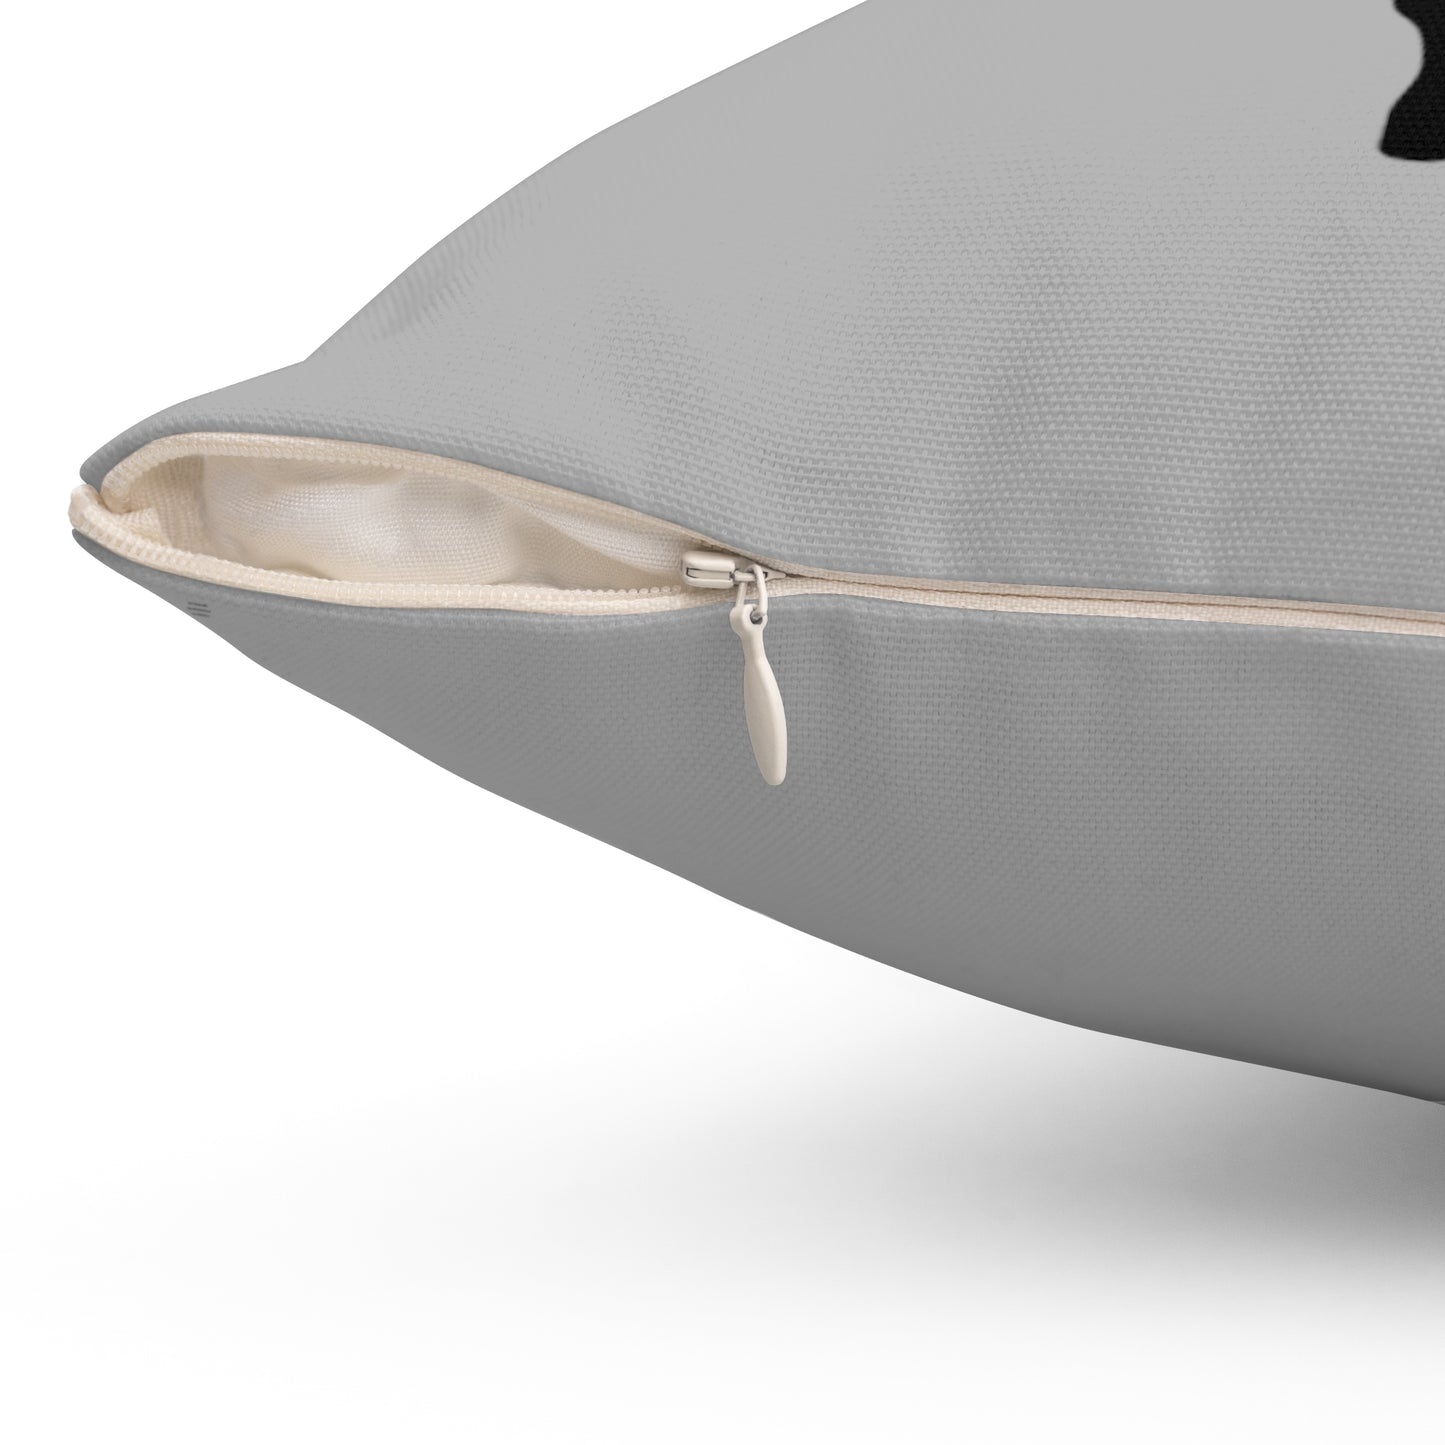 Spun Polyester Square Pillow: Dance Lite Grey